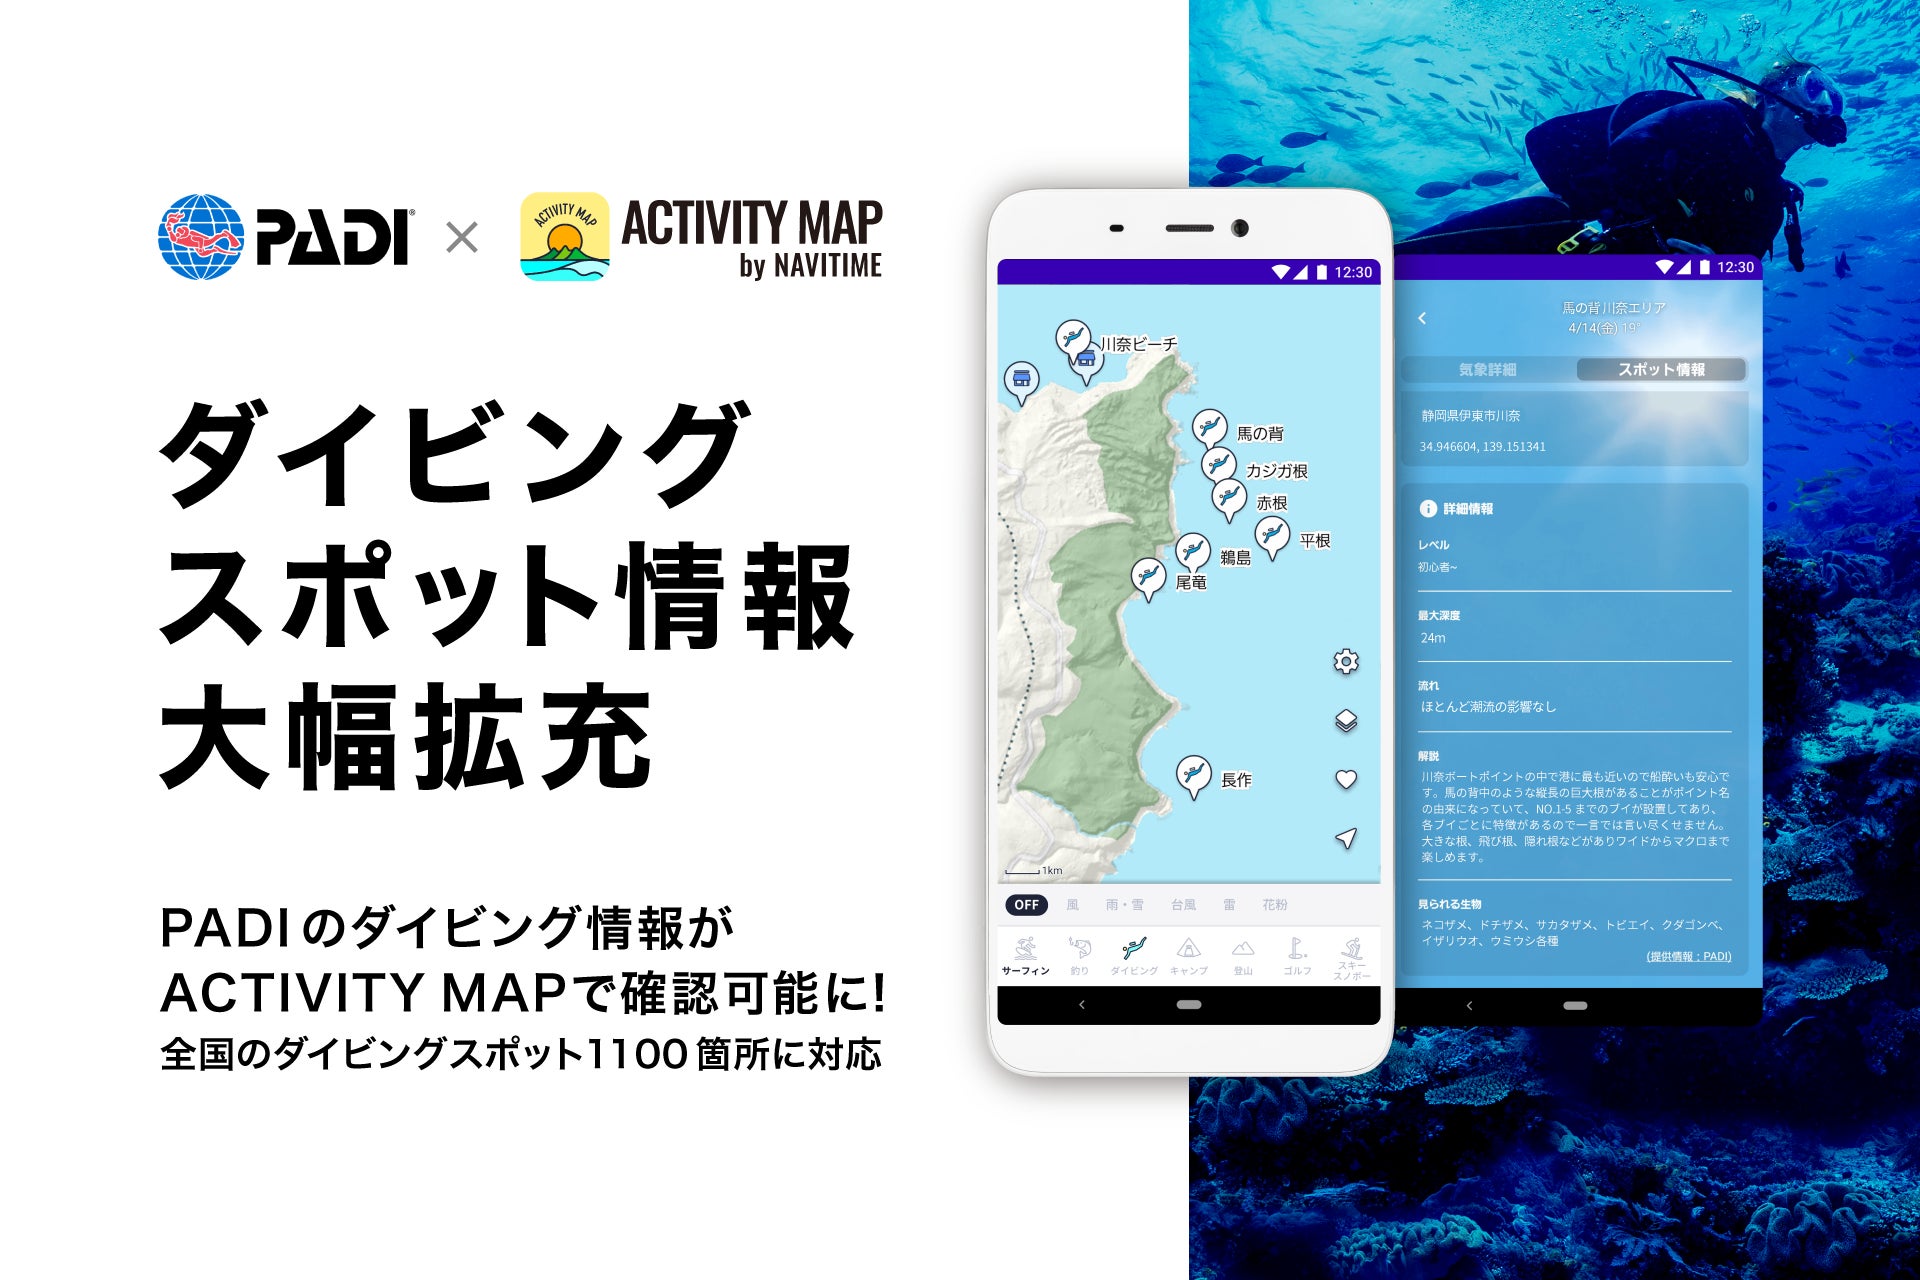 アウトドア用地図・気象情報アプリ『ACTIVITY MAP by NAVITIME』、PADIと連携し、ダイビング情報を大幅拡充